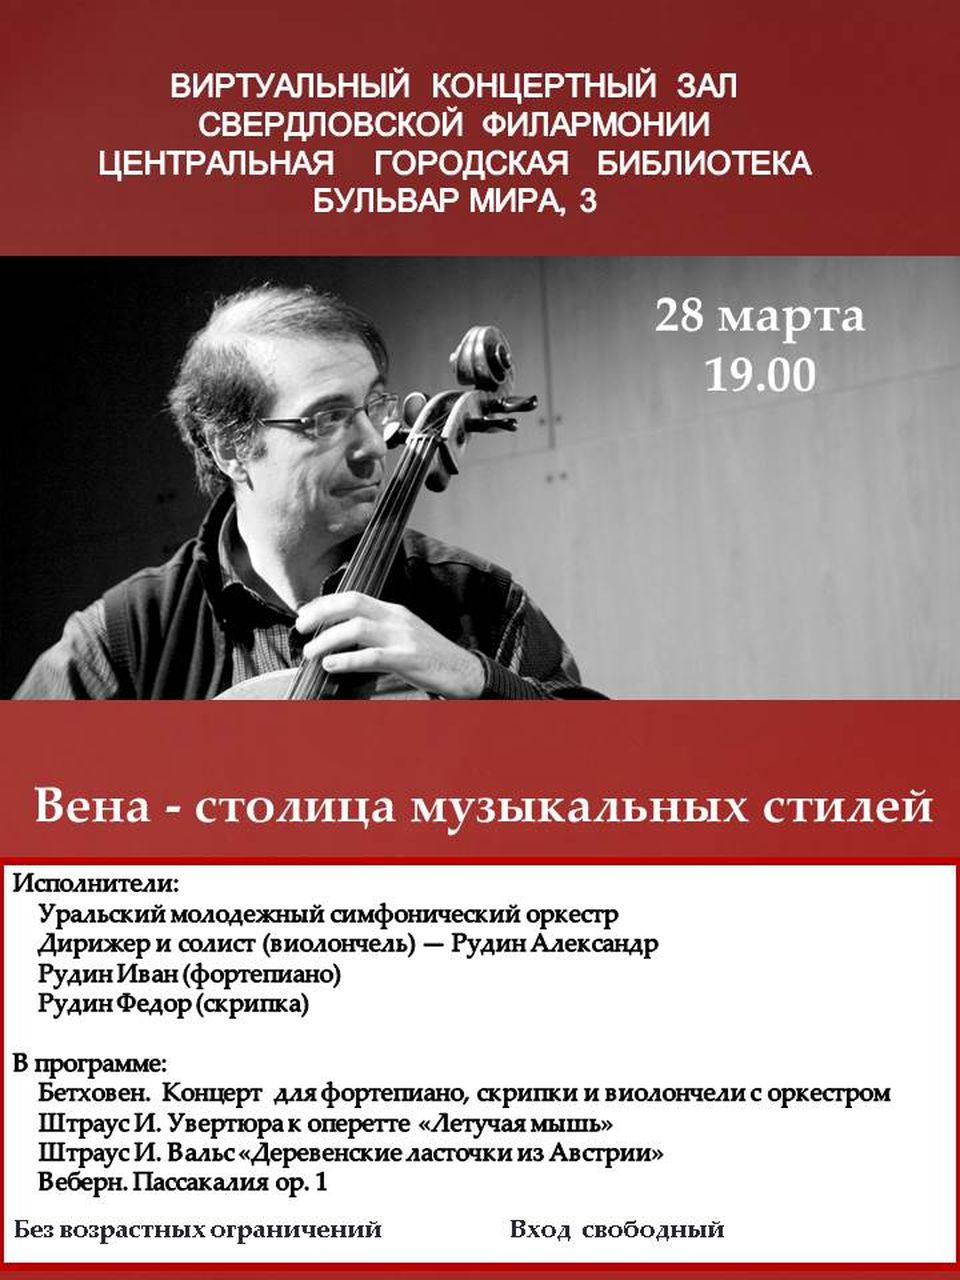 Завтра в Центральной городской библиотеке пройдет виртуальный концерт Уральского молодежного симфонического оркестра 